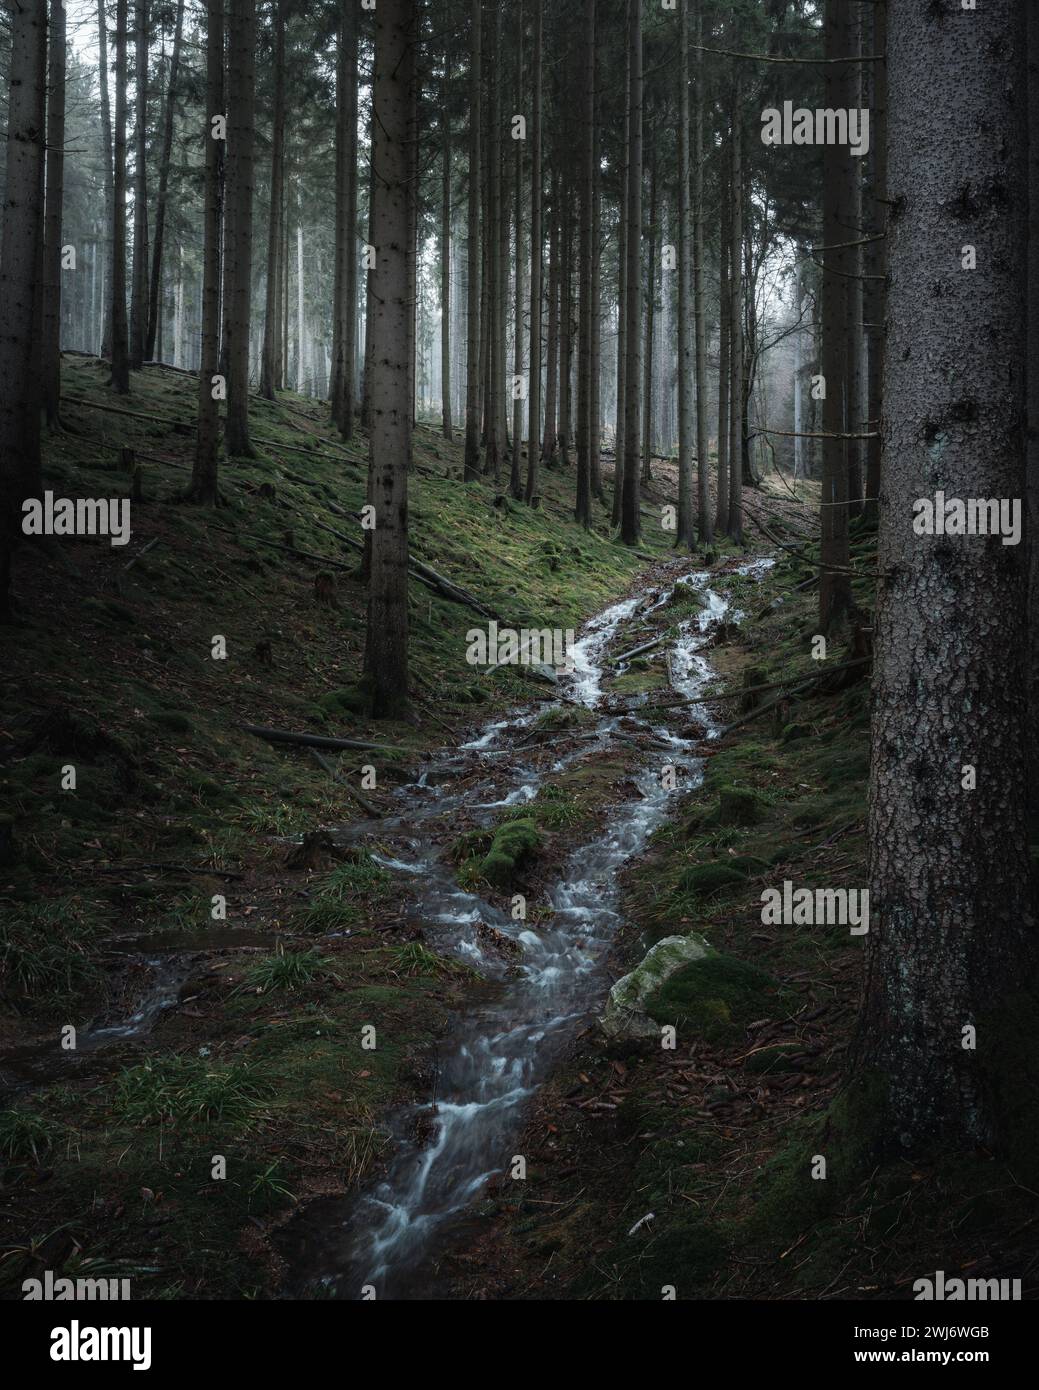 Una tranquilla scena boschiva con acqua che scorre a cascata lungo un sentiero Foto Stock